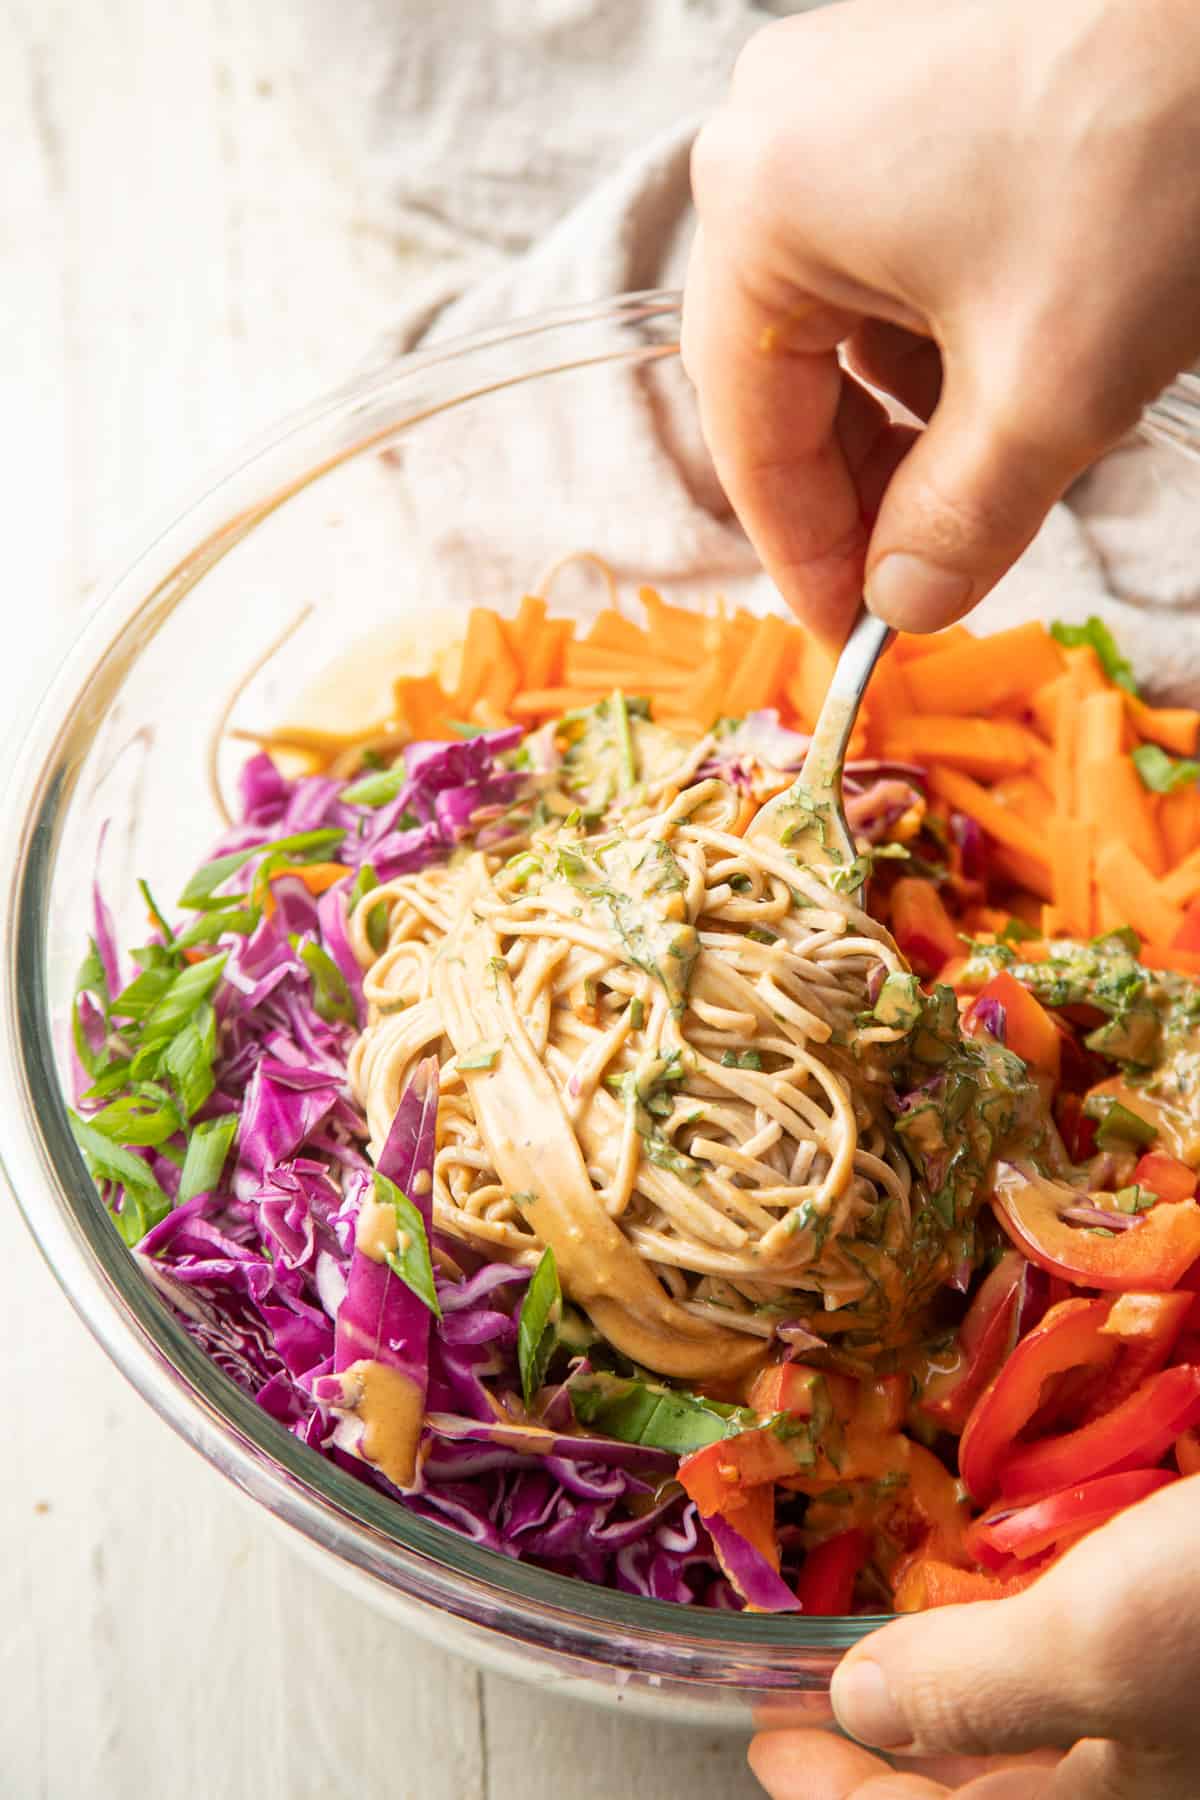 Hand Stirring Vegan Soba Noodle Salad ingredients together in a bowl.